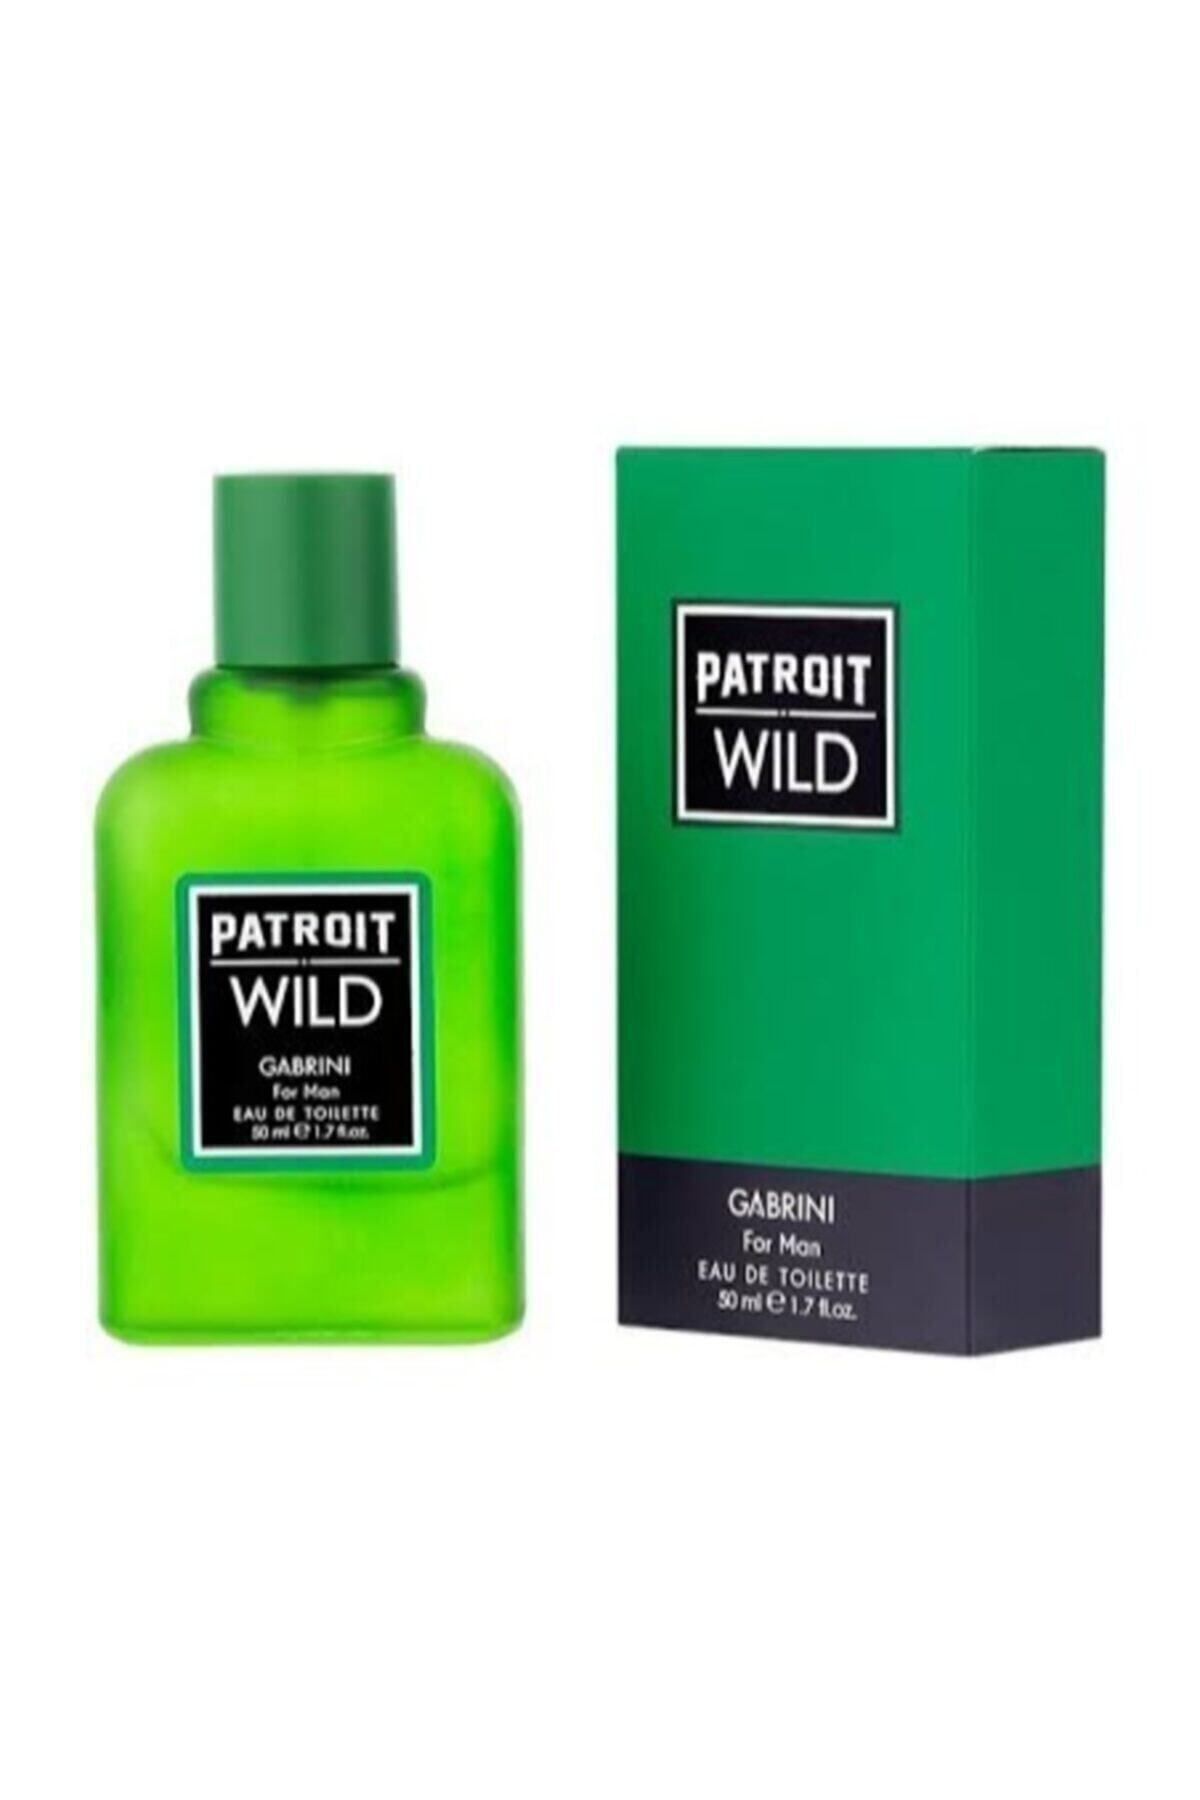 Gabrini Patroit Wild For Man Edt 50 ml